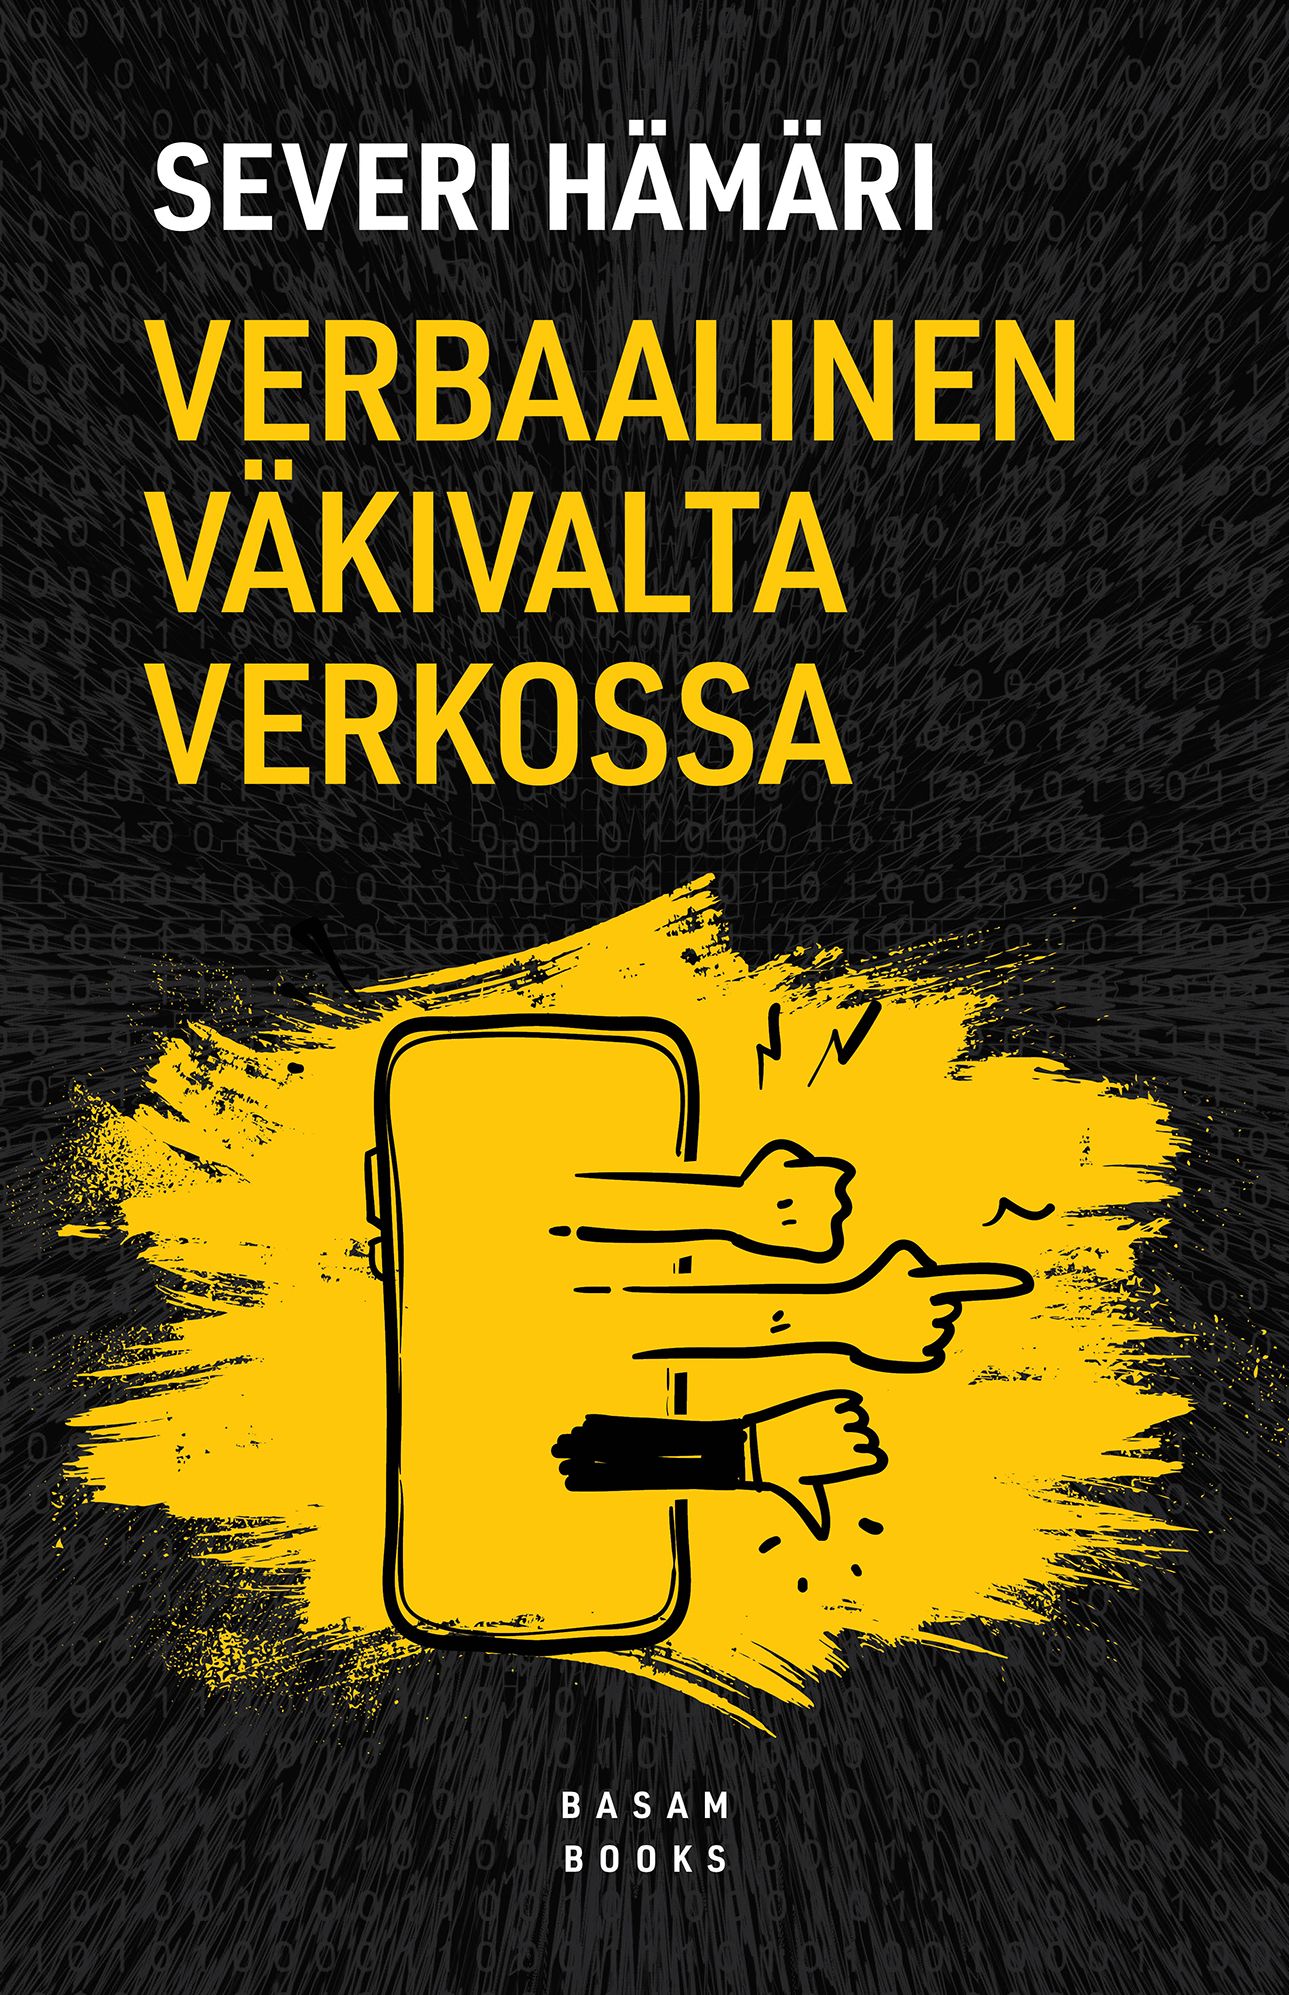 Severi Hämäri : Verbaalinen väkivalta verkossa